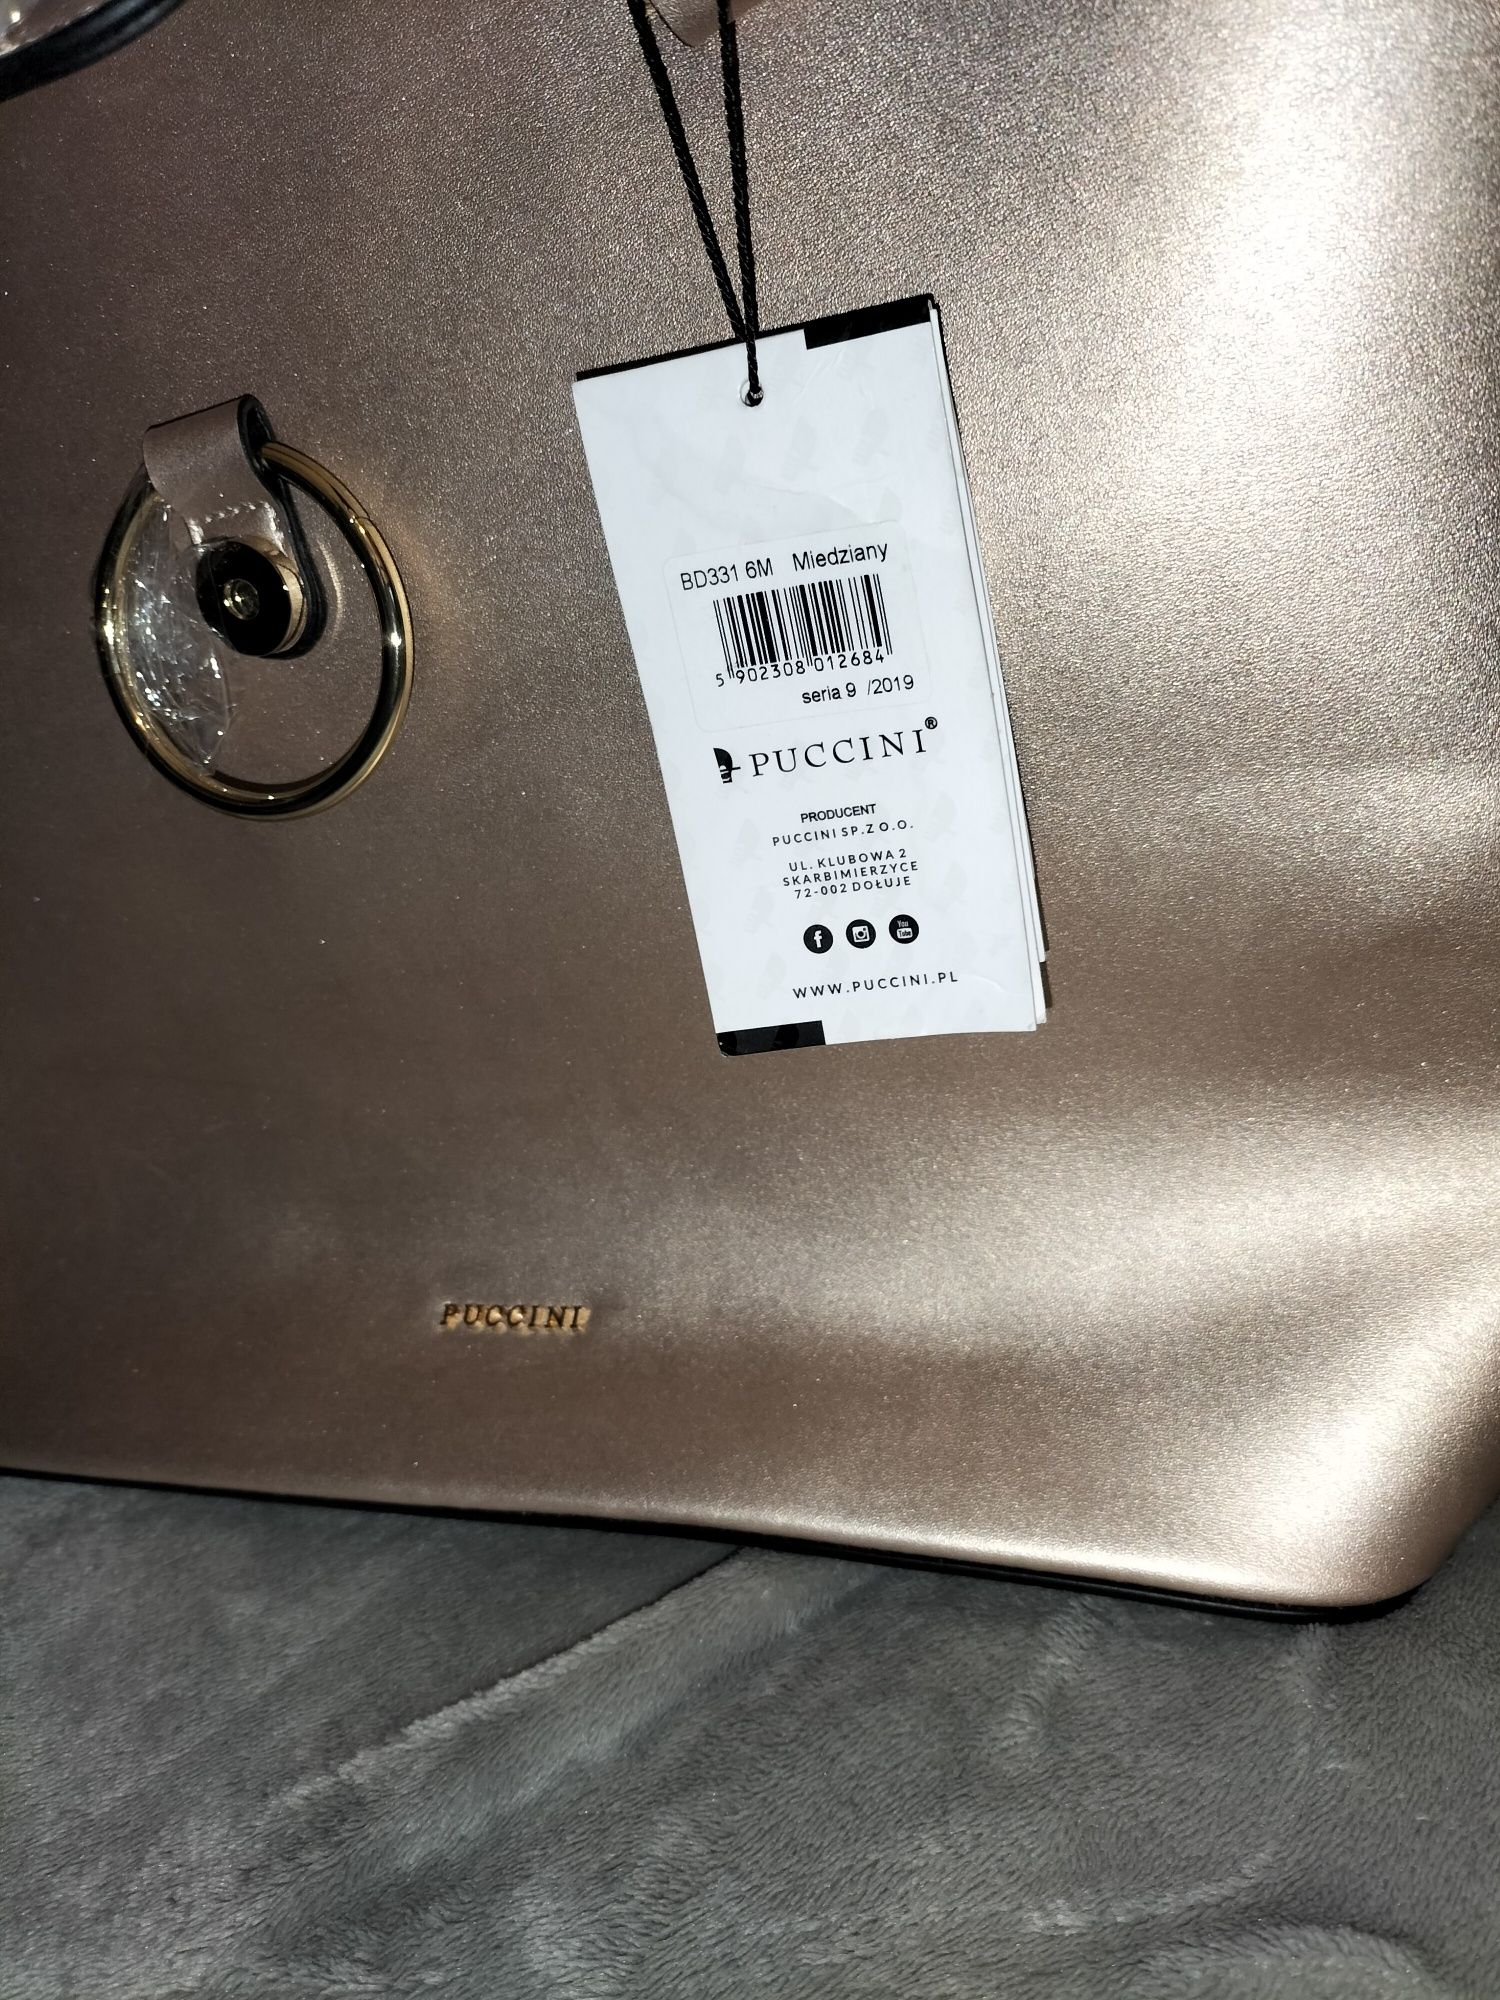 Nowa złota torebka Puccini mieści A4 z metką